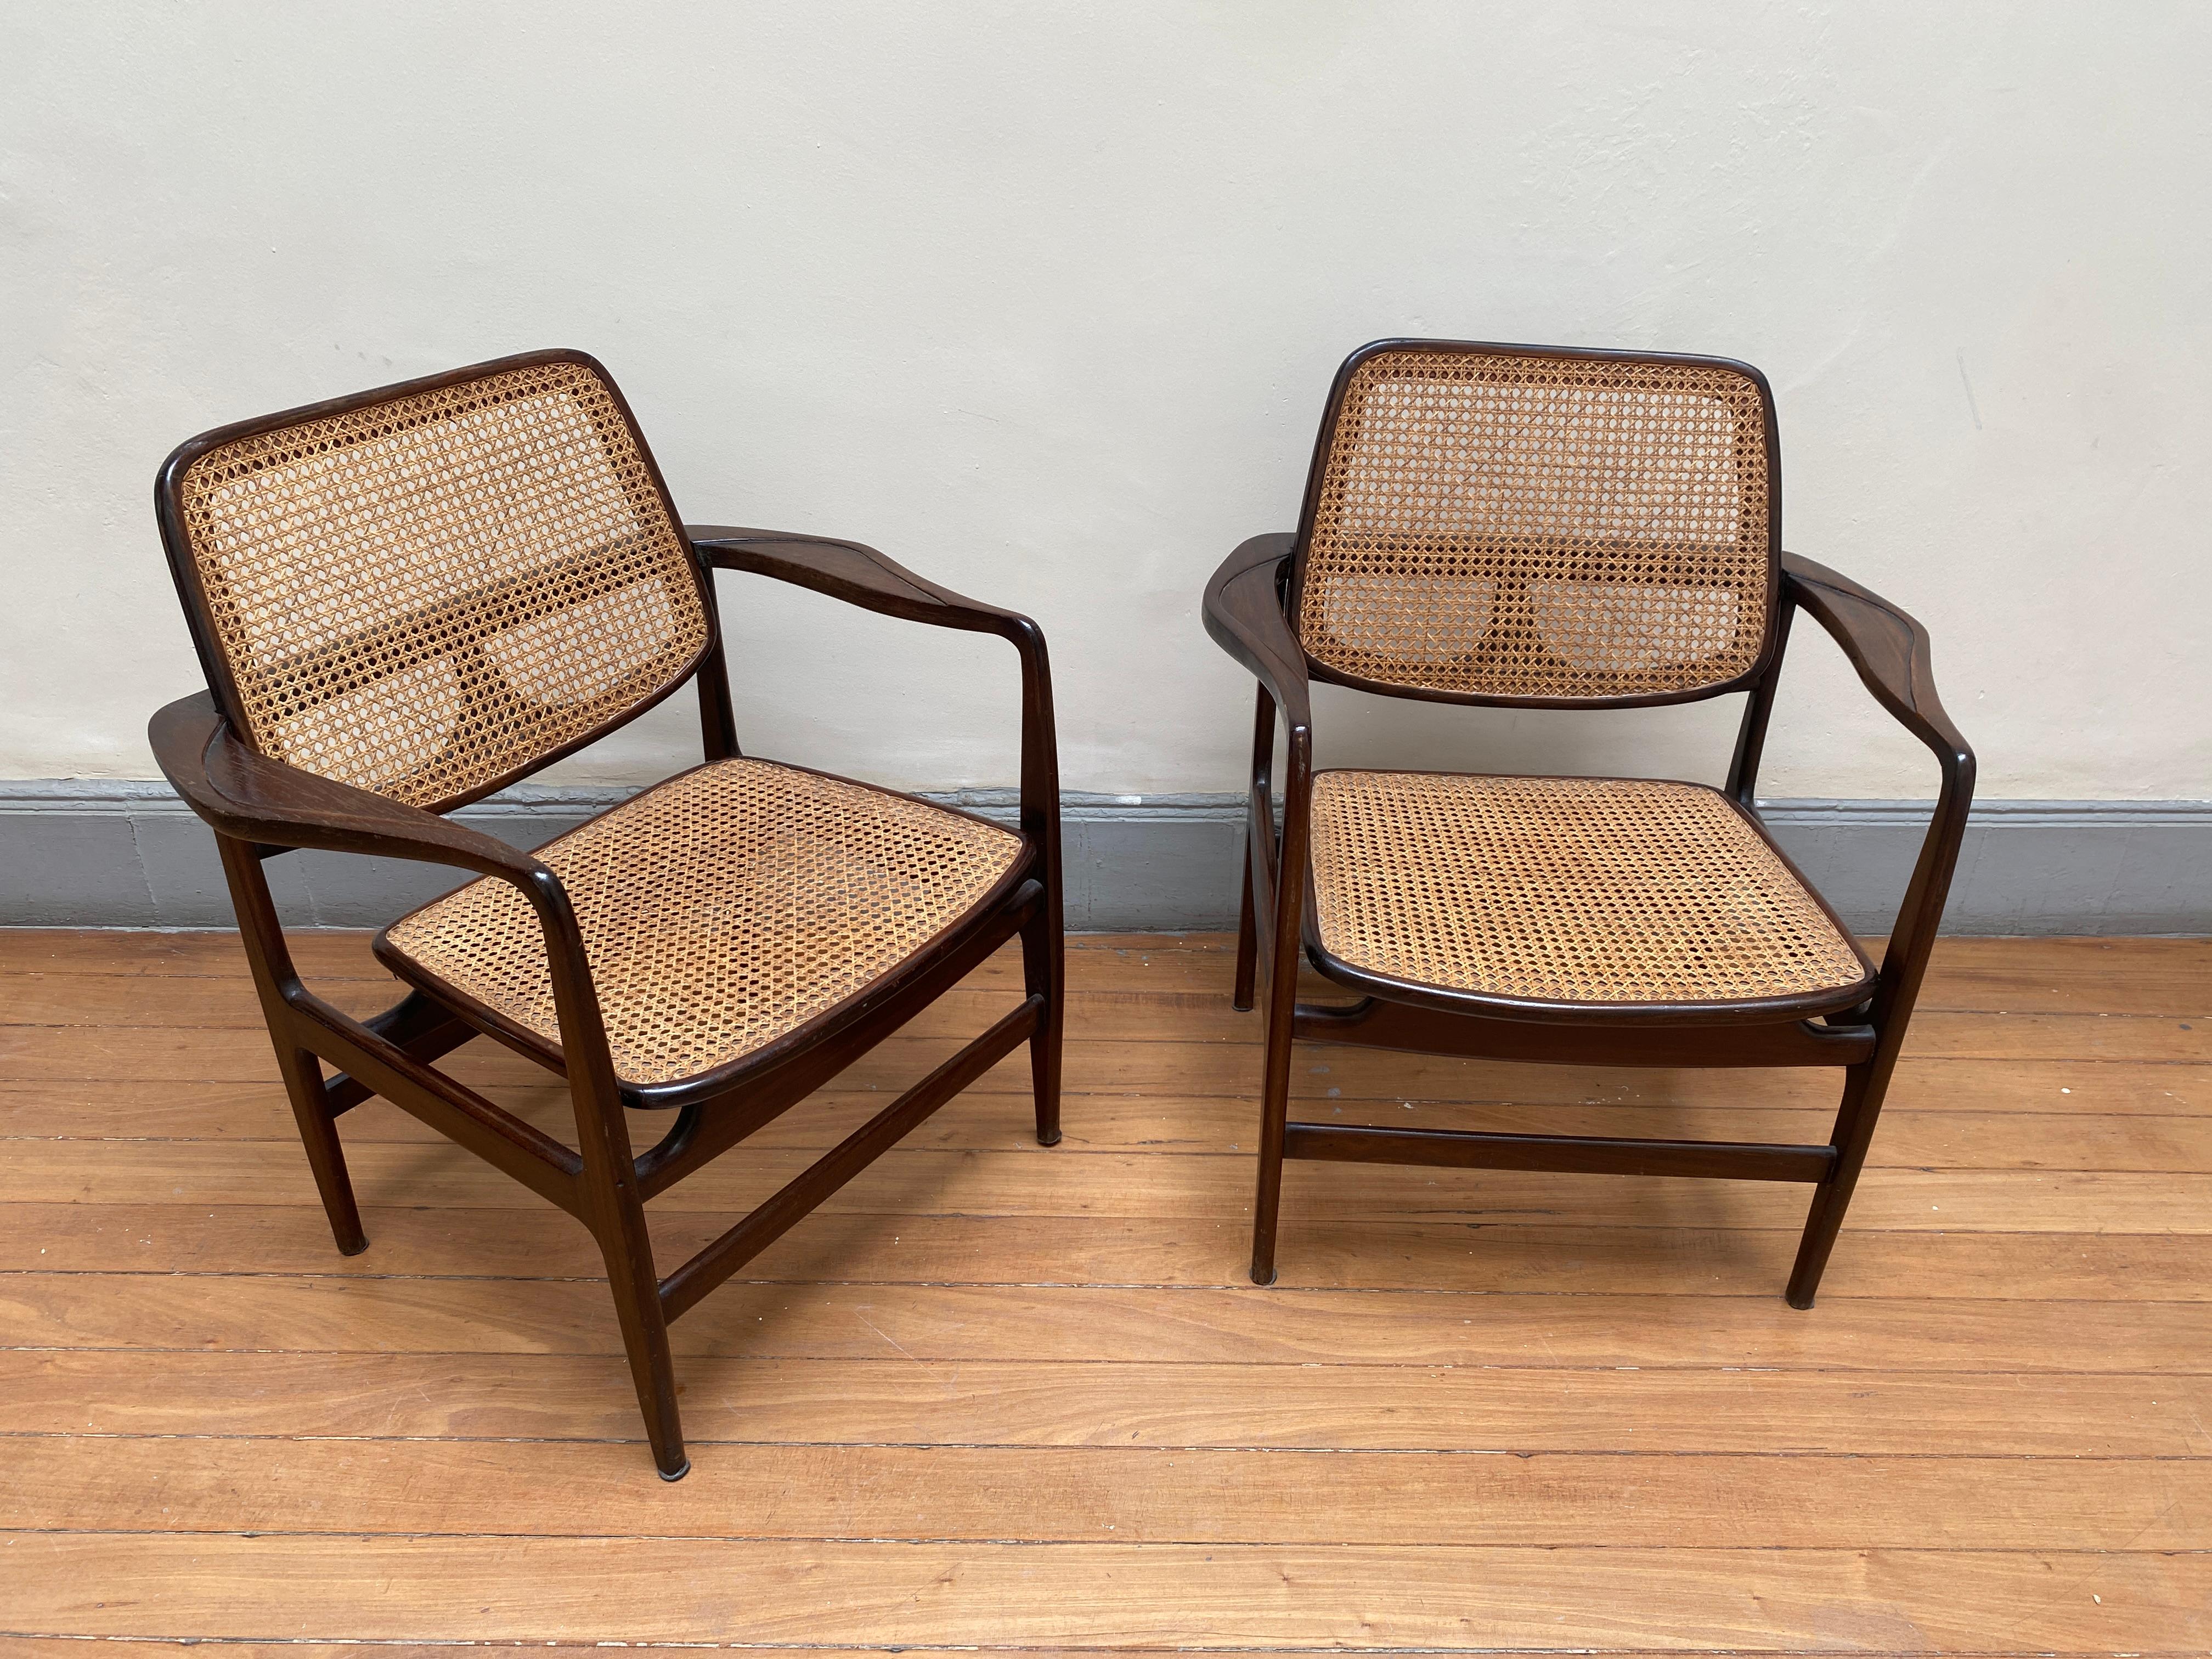 Ensemble de deux fauteuils Oscar de style mi-siècle moderne par Sergio Rodrigues, Brésil, 1956

Nommé en l'honneur d'Oscar Niemeyer, ce fauteuil reprend les courbes iconiques et les lignes sinueuses caractéristiques du travail du célèbre architecte